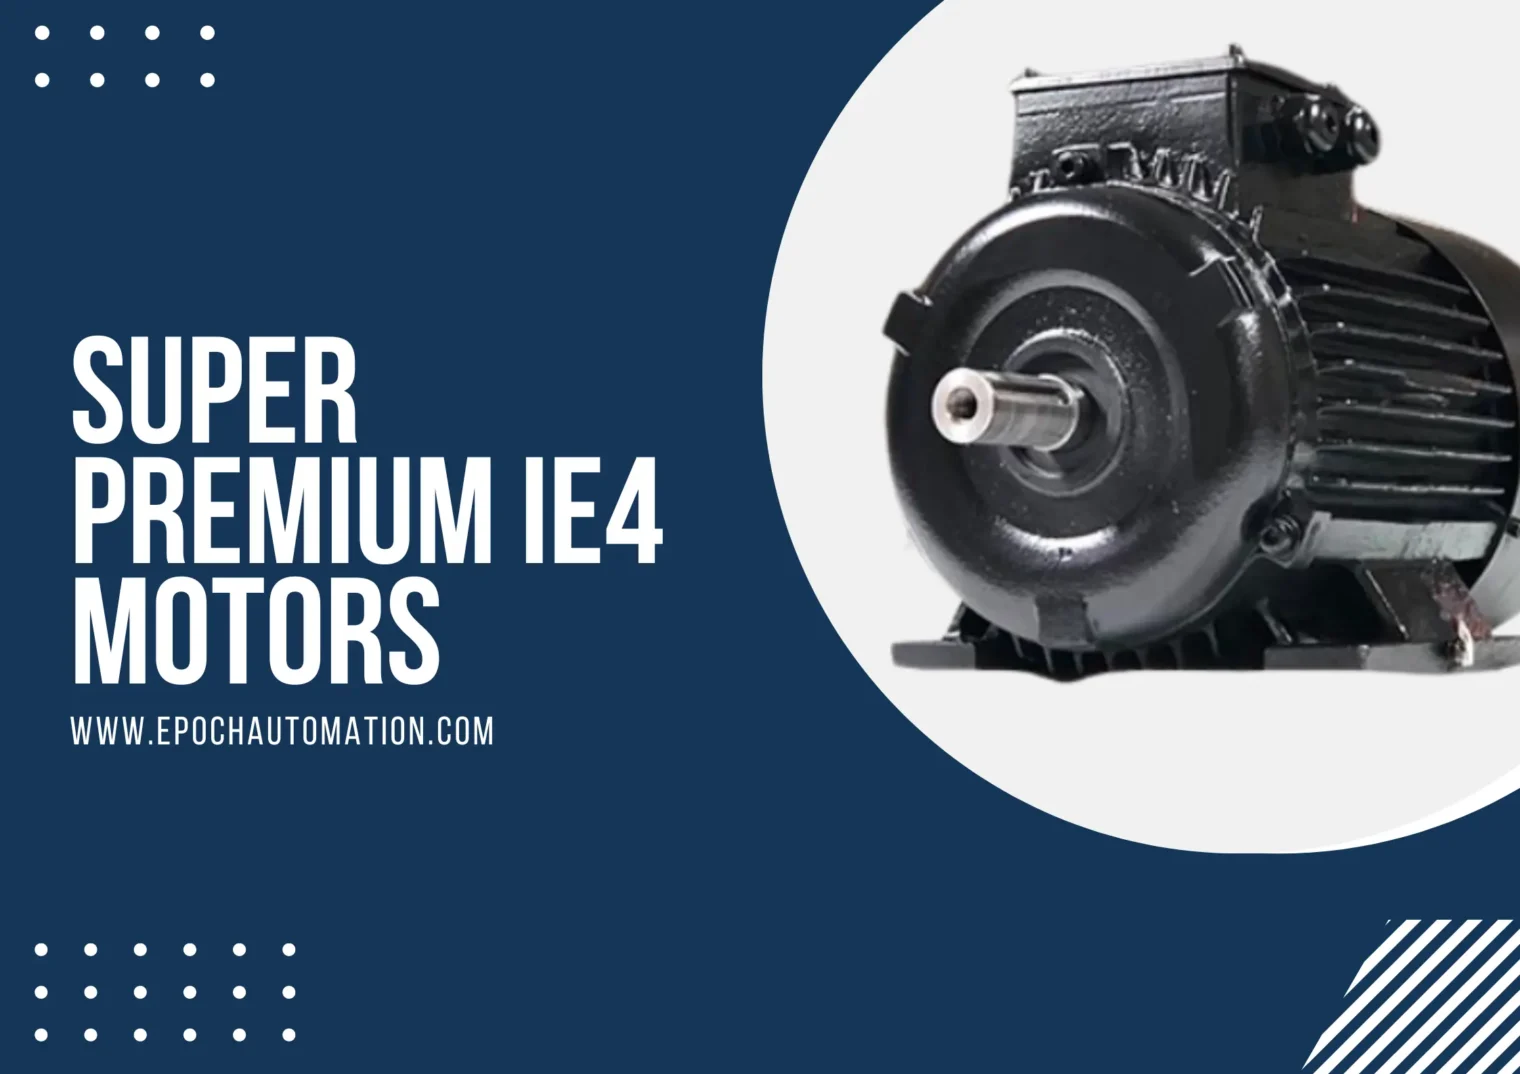 Super Premium IE4 Motors